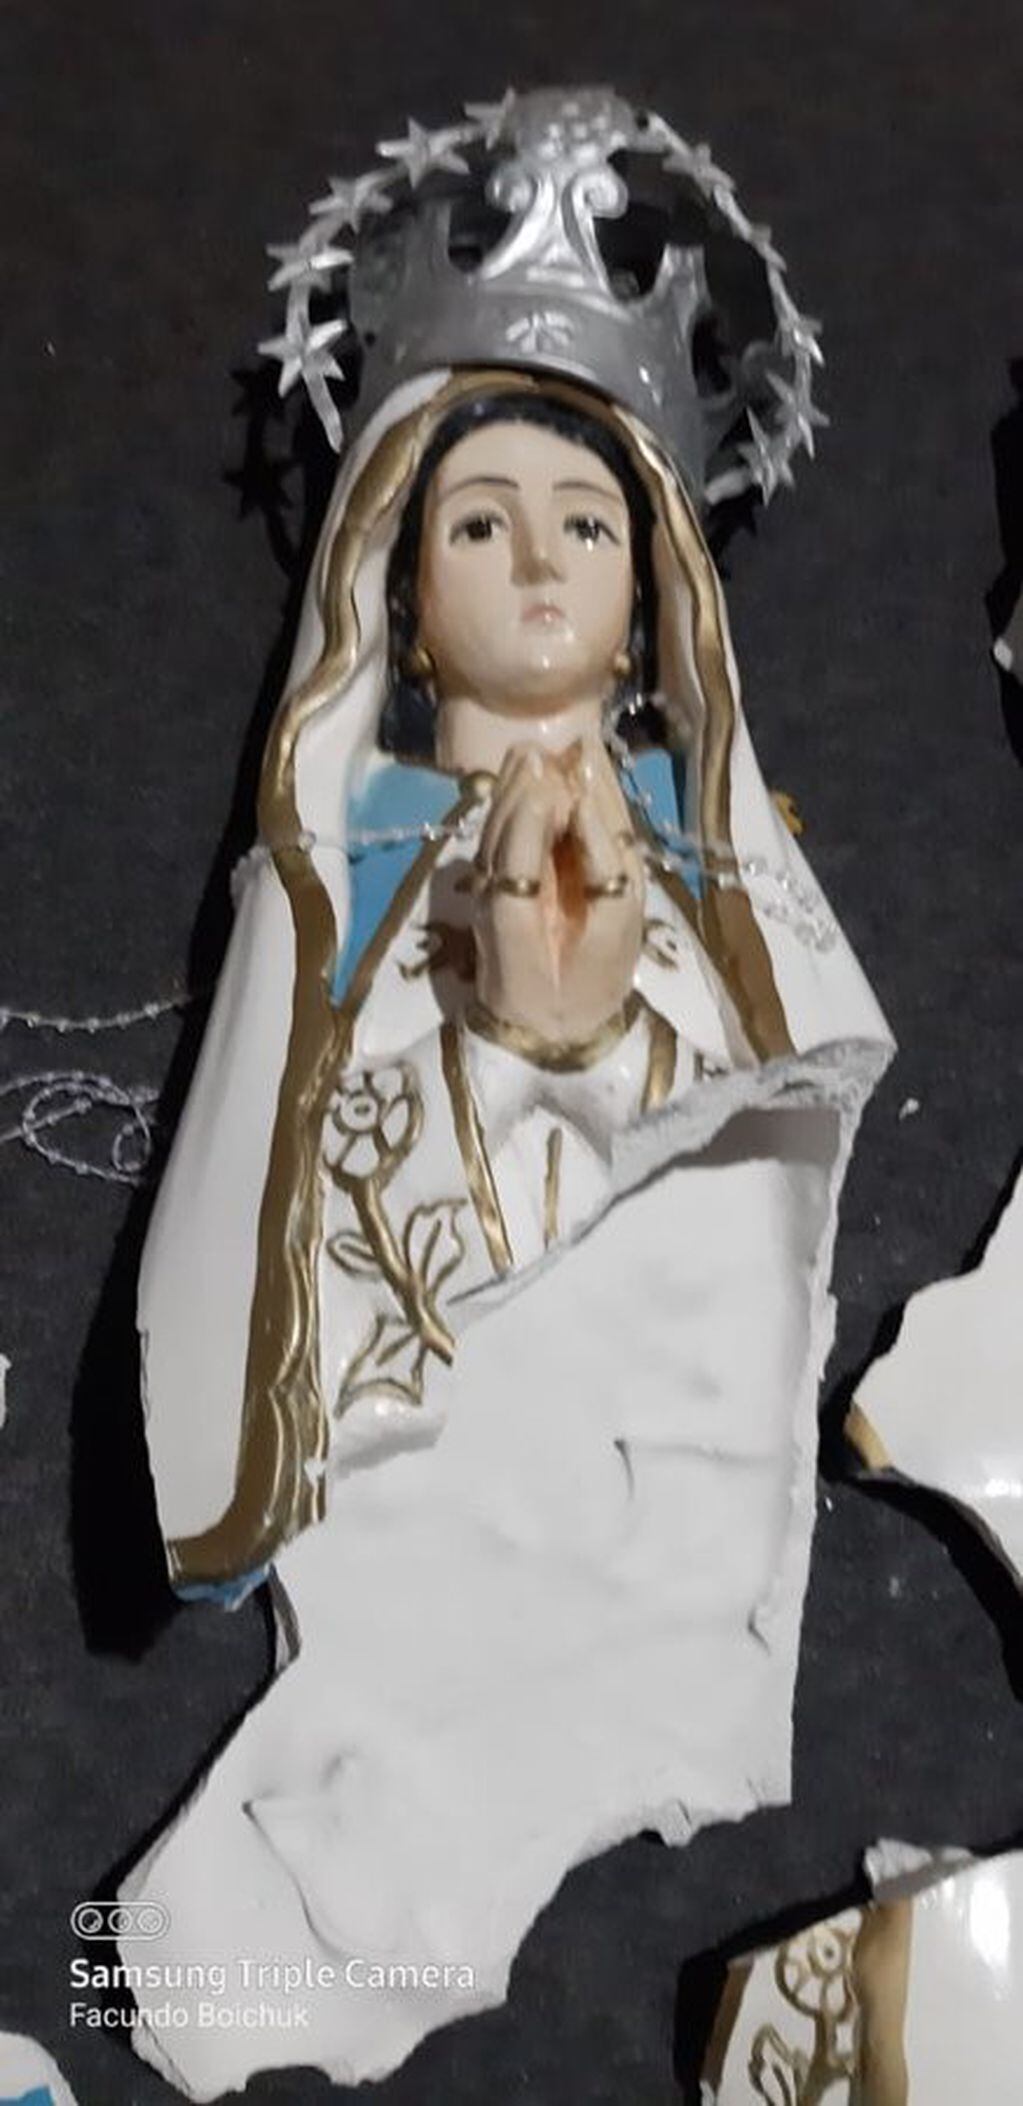 Lo que quedó intacto del ataque contra la imagen de la Virgen de Itatí en Posadas.